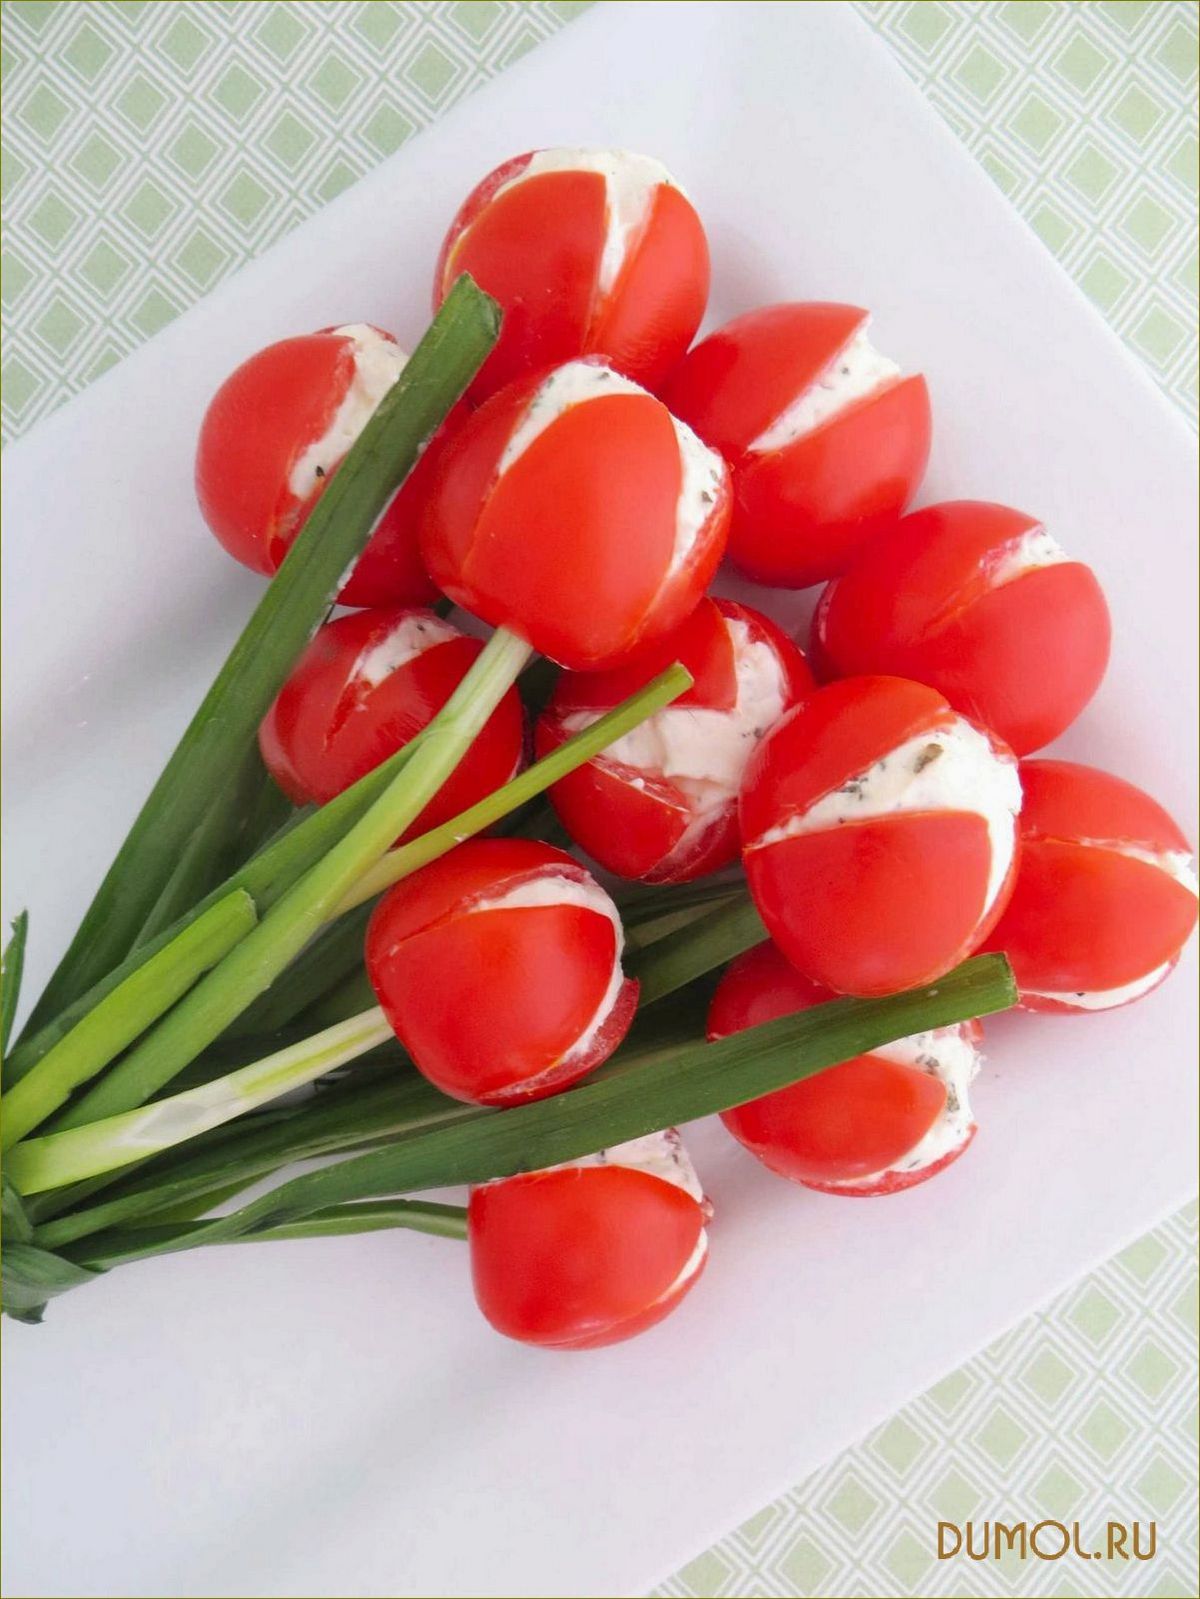 Идеальная закуска: Цветок из лука, которая поразит ваши вкусовые рецепторы